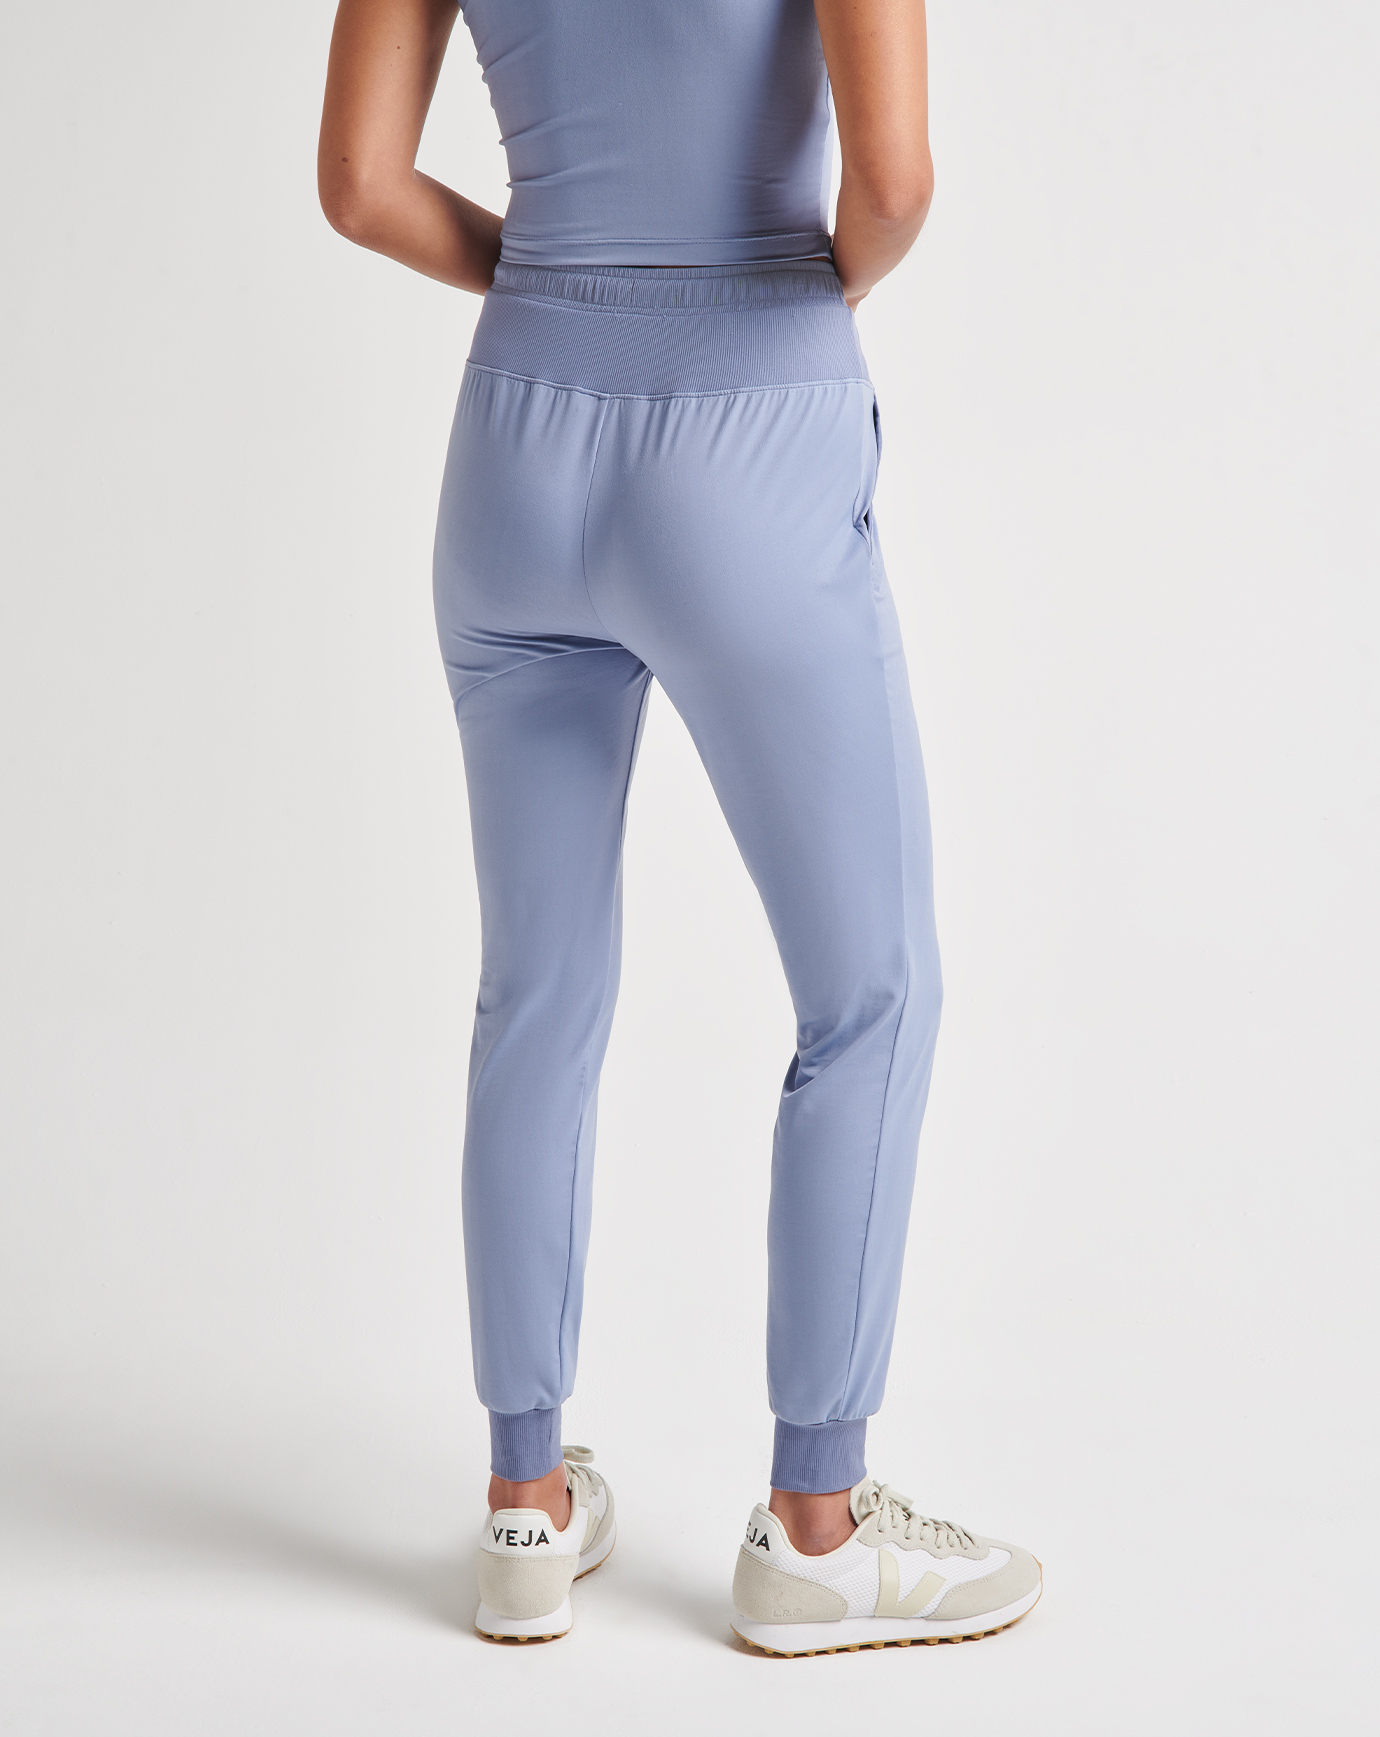 NWT L 2 pc matching adidas originals set t-shirt jogger sweatpants